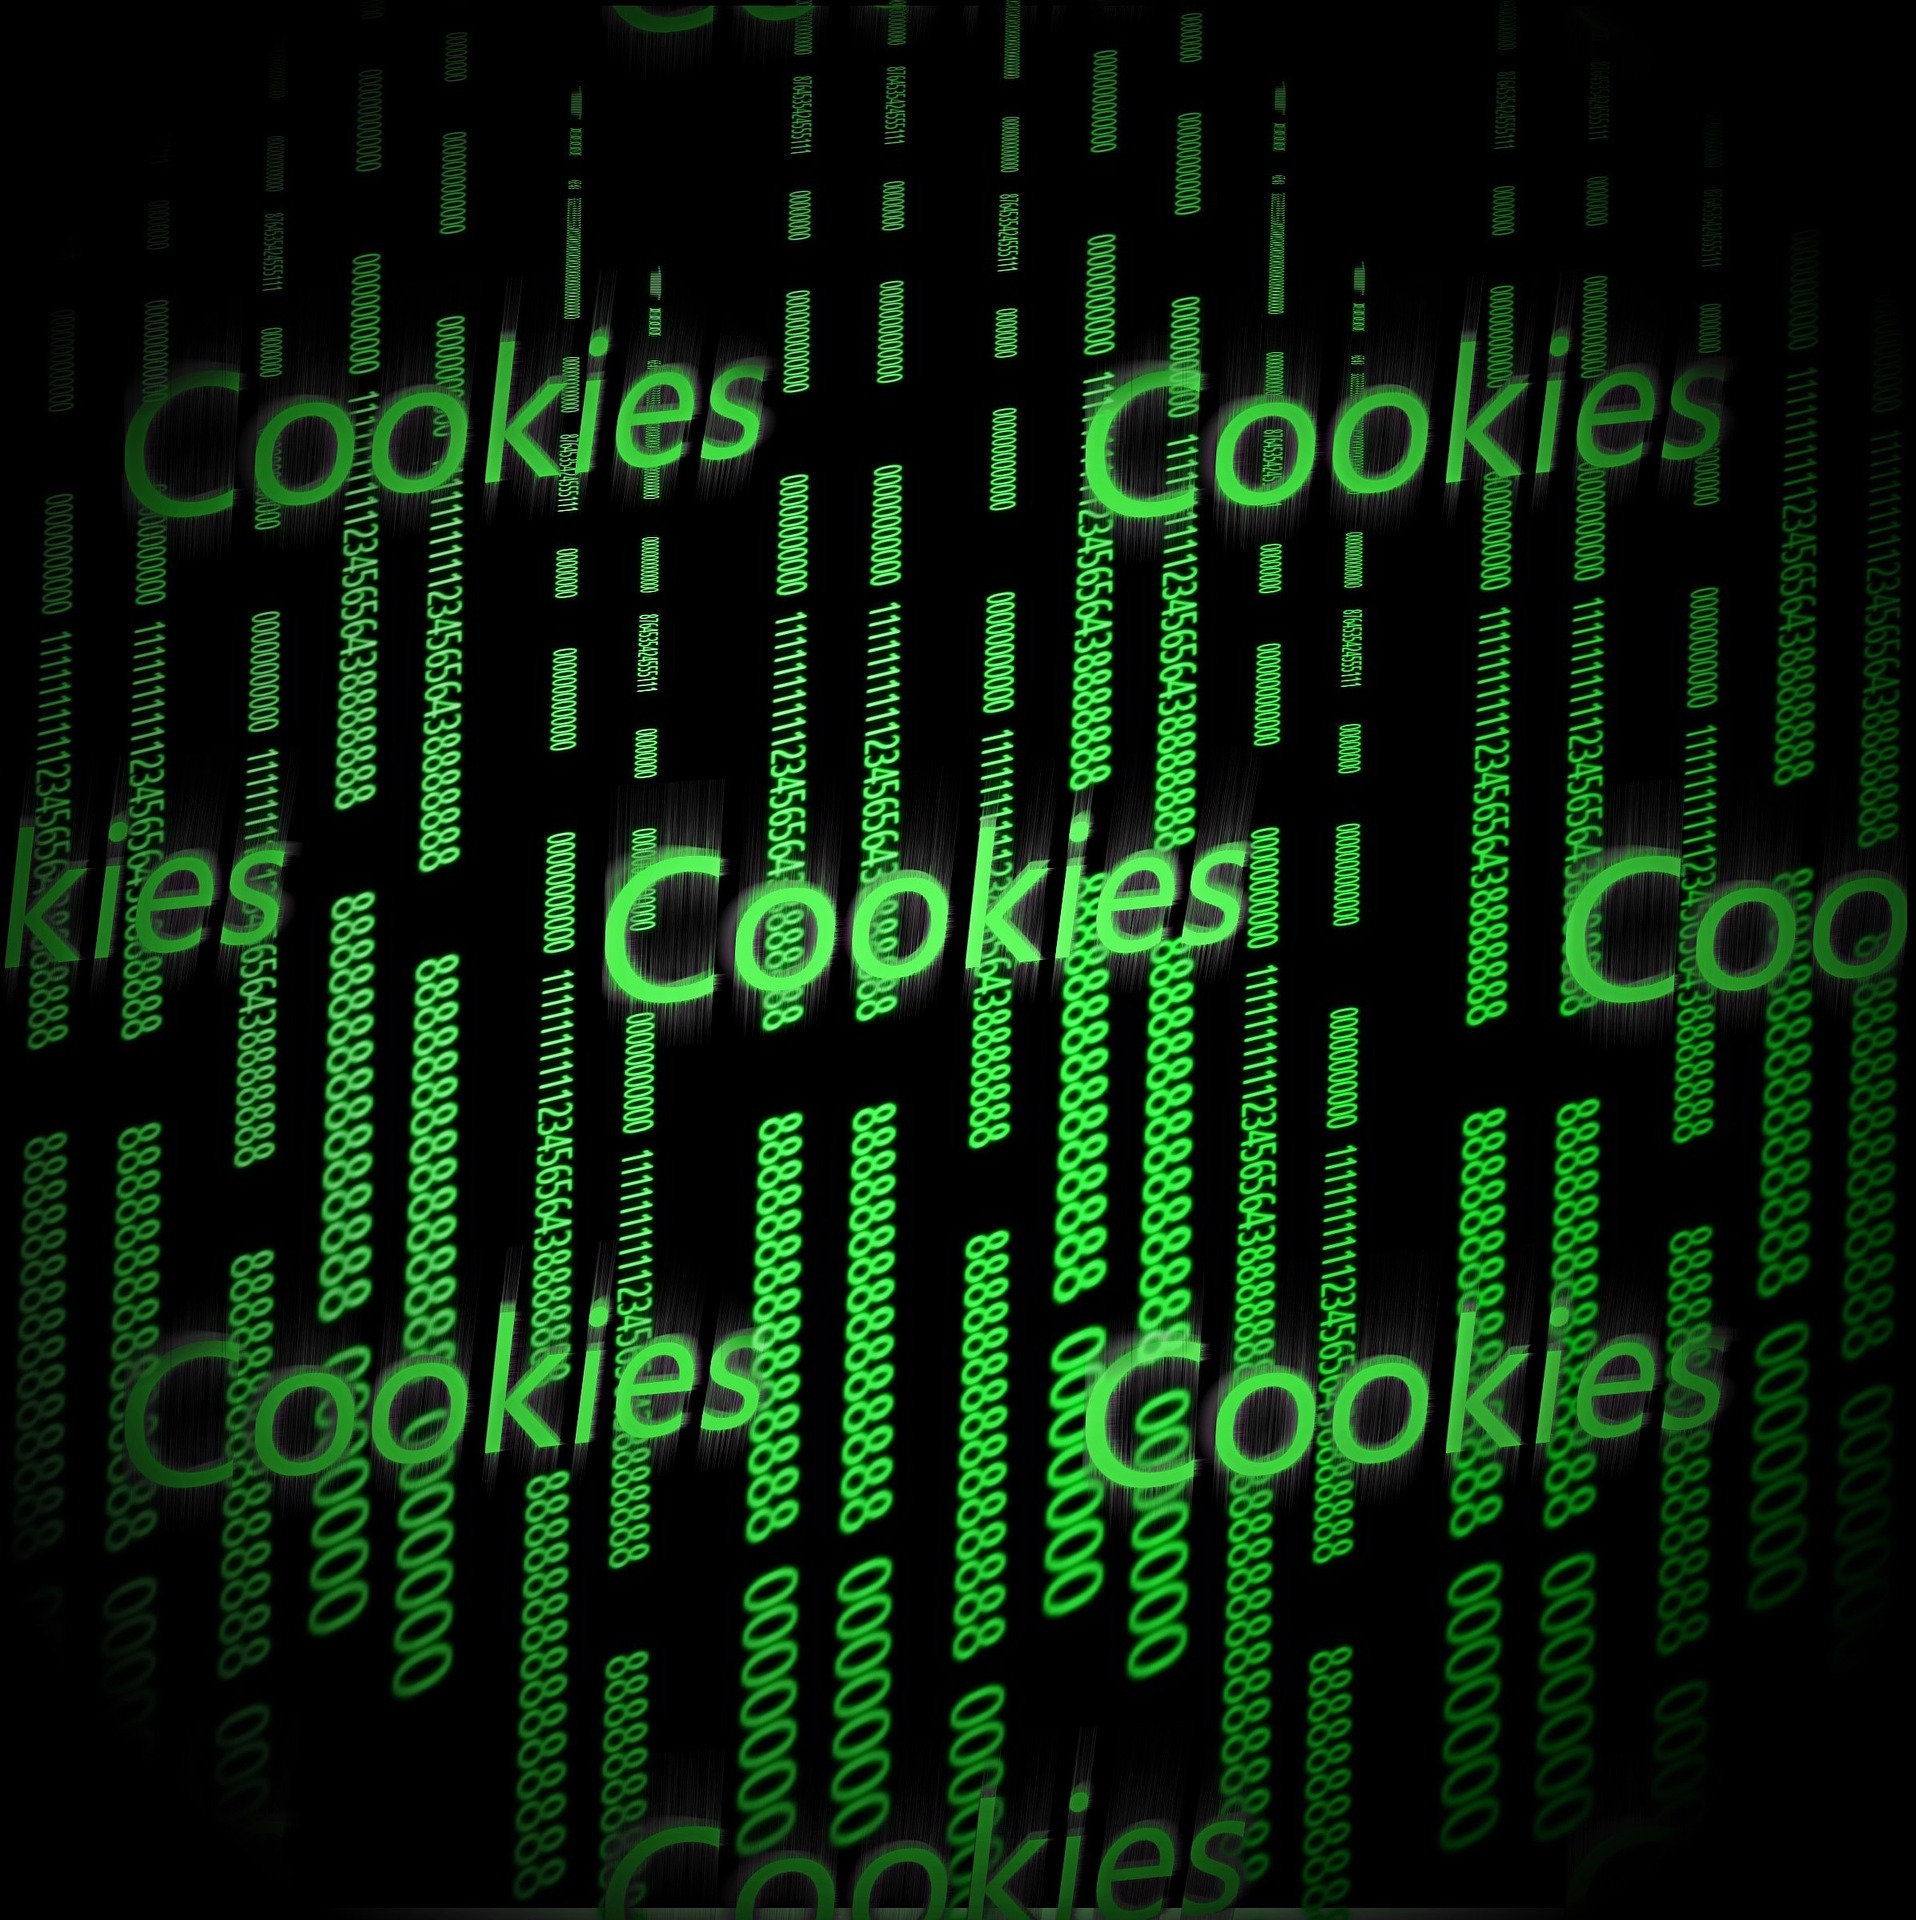 LG Frankfurt - Nutzung von Cookies ohne Einwilligung Internet Digital Medien Digitalisierung Online Zahlen